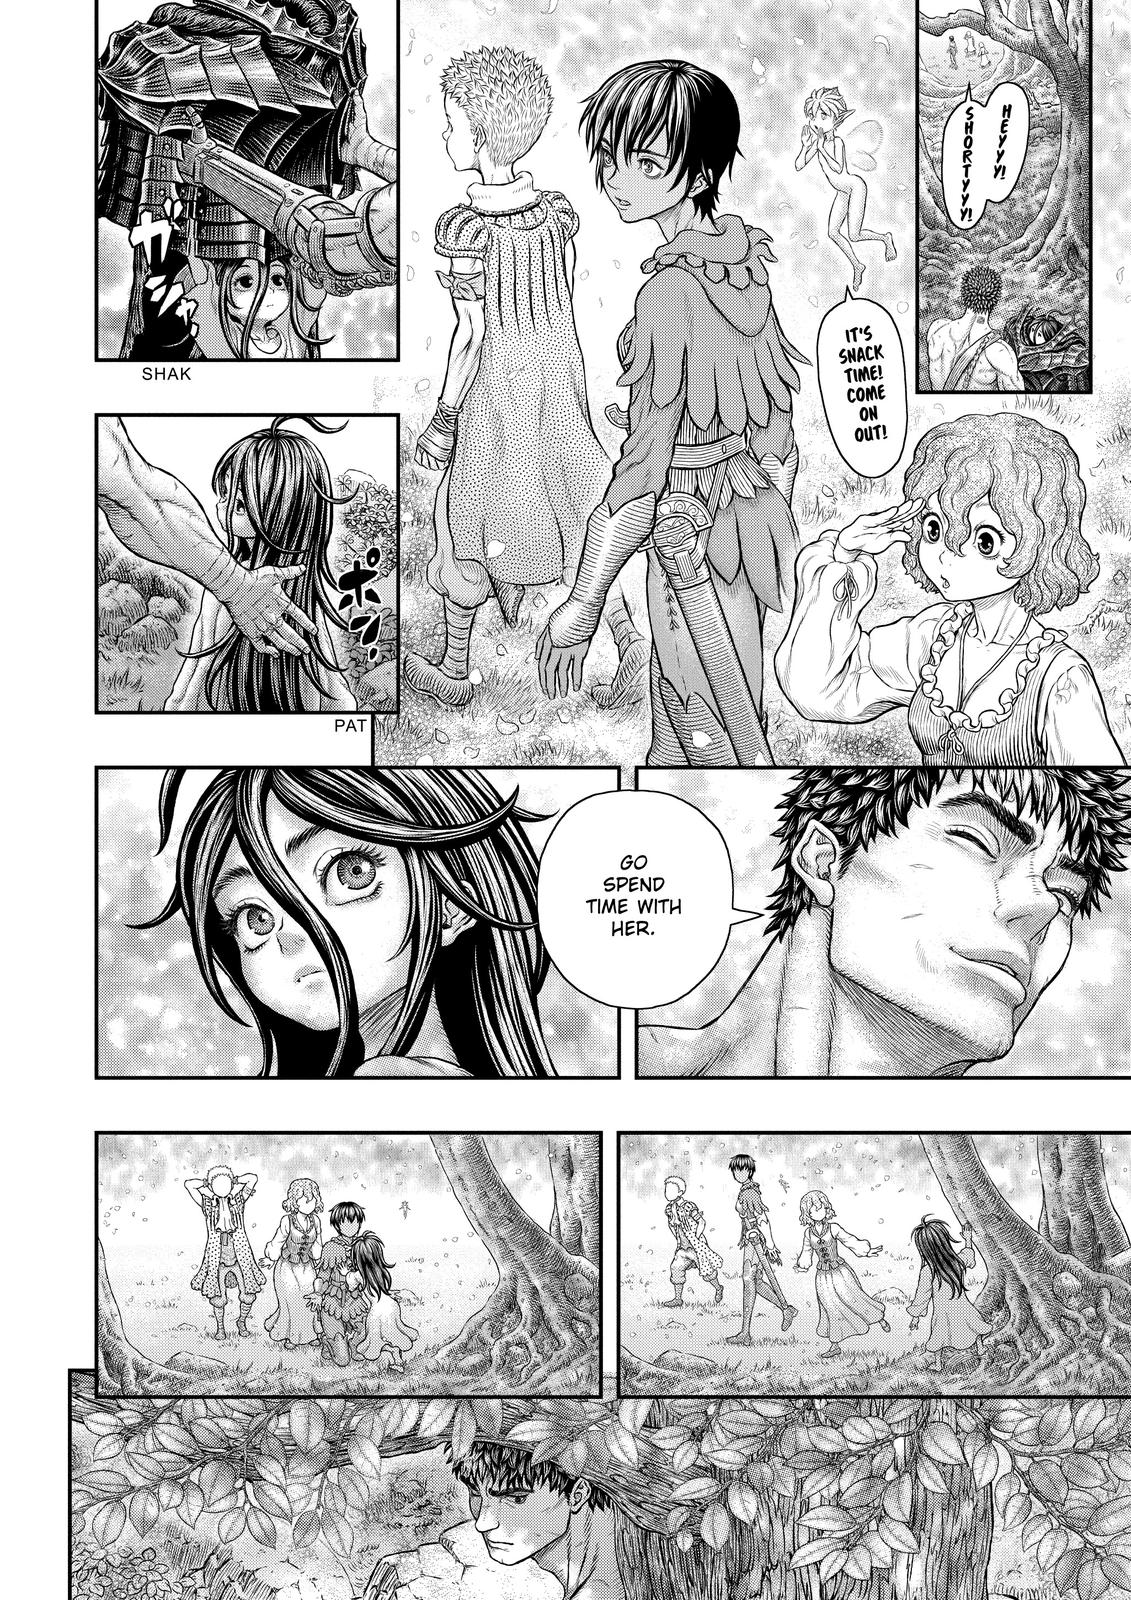 Berserk Manga Chapter 364 image 18